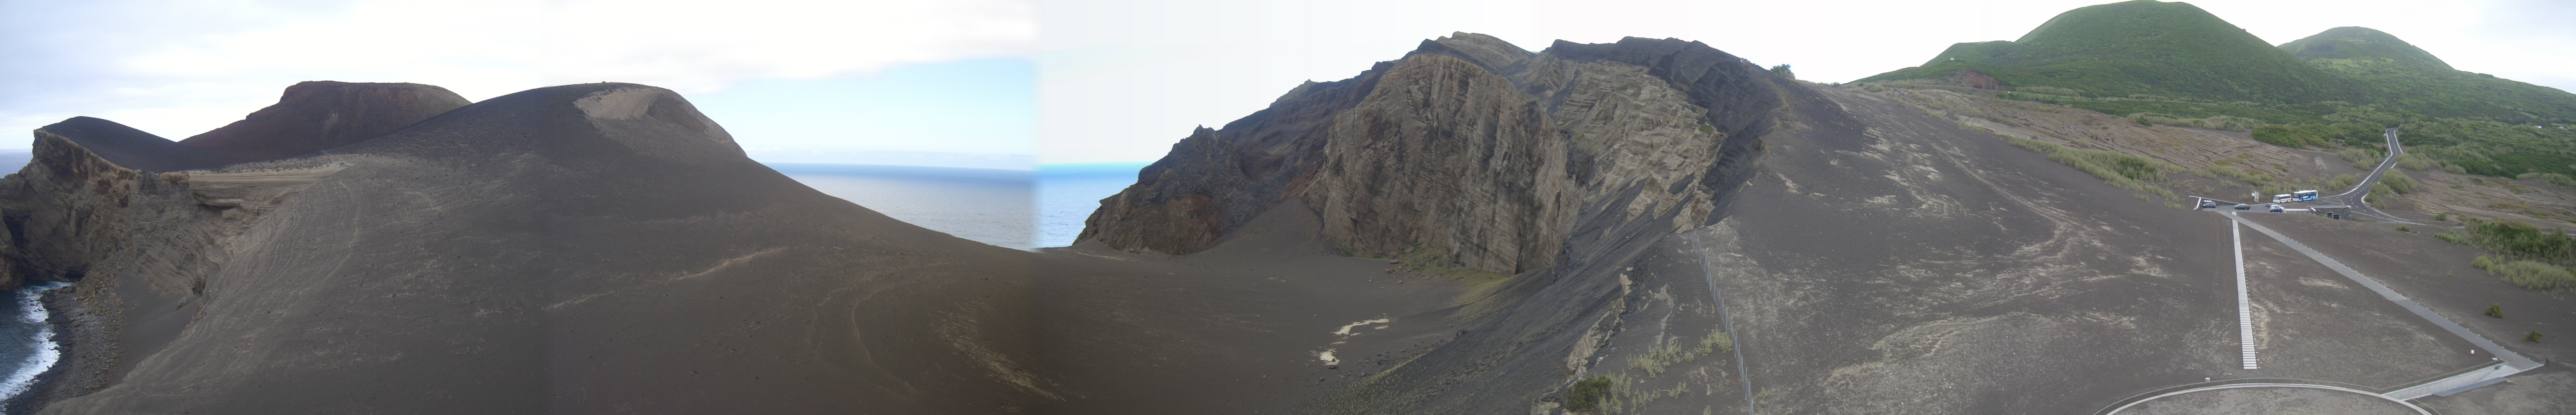 CIMG3327bis3331.JPG - Ponta dos Capelinhos/Leuchtturm: Blick auf die neuen Vulkane (Panorama).